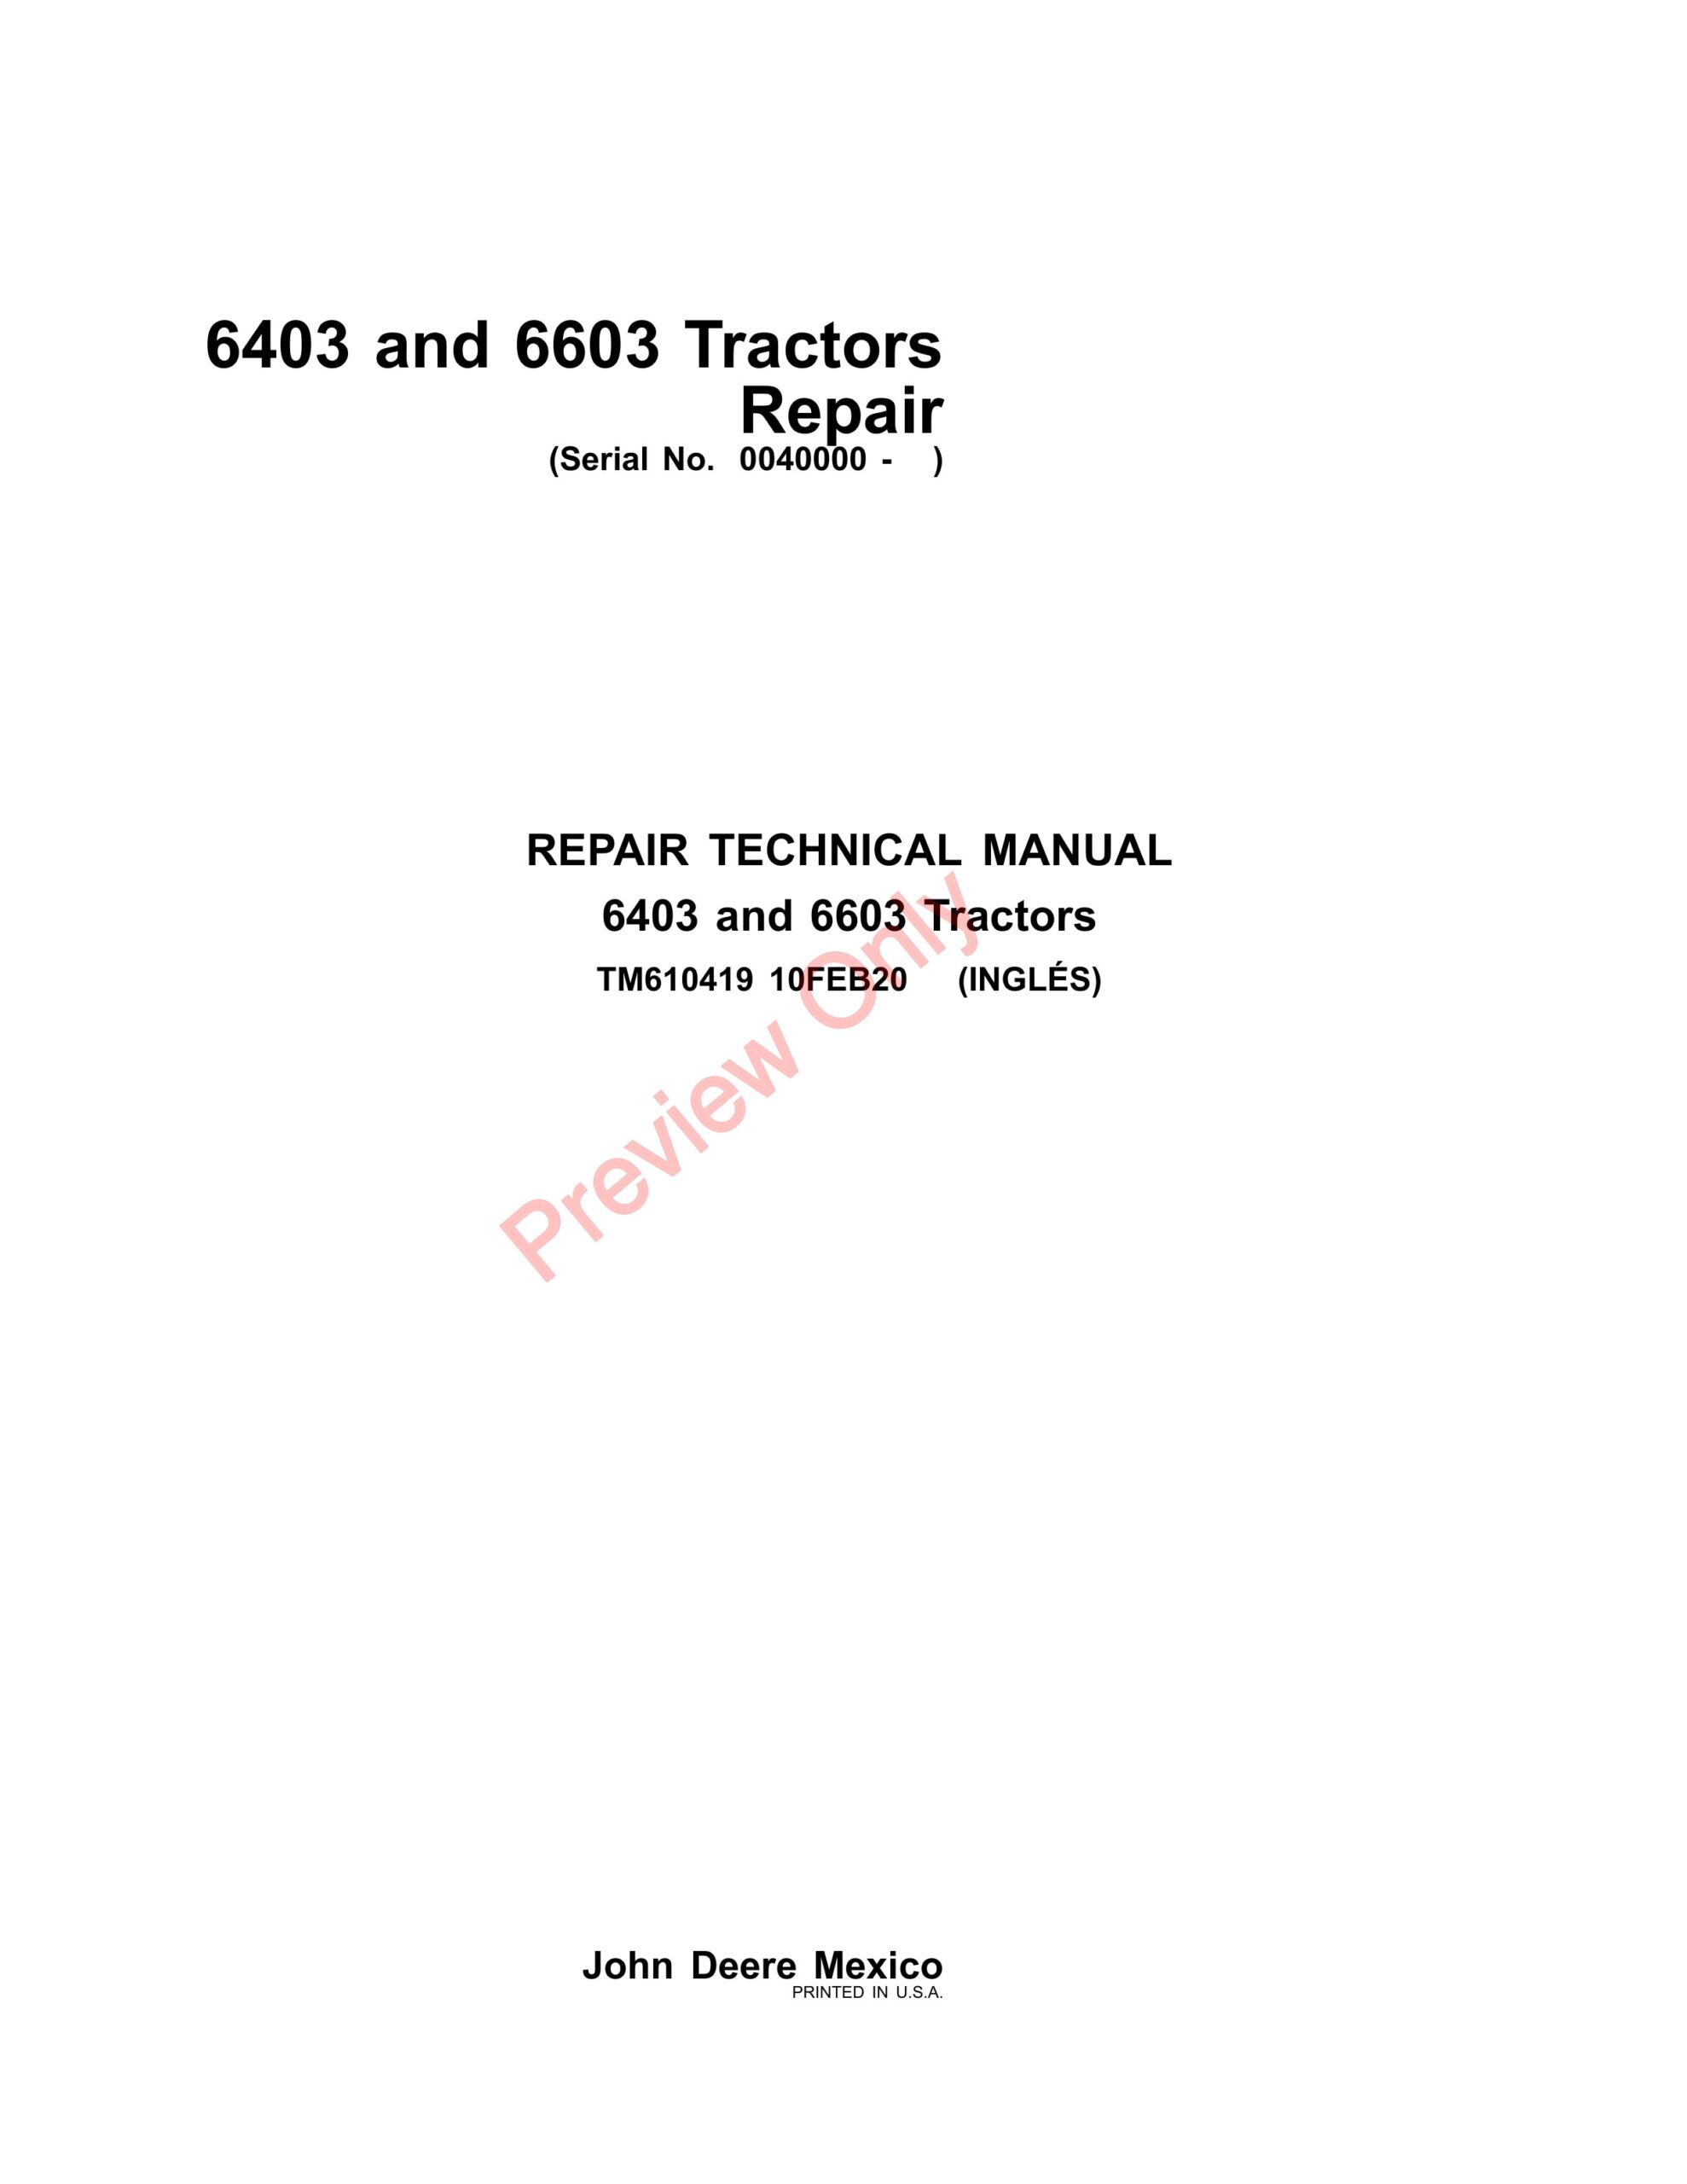 John Deere 6403 and 6603 Tractors Repair Technical Manual TM610419 10FEB20-1